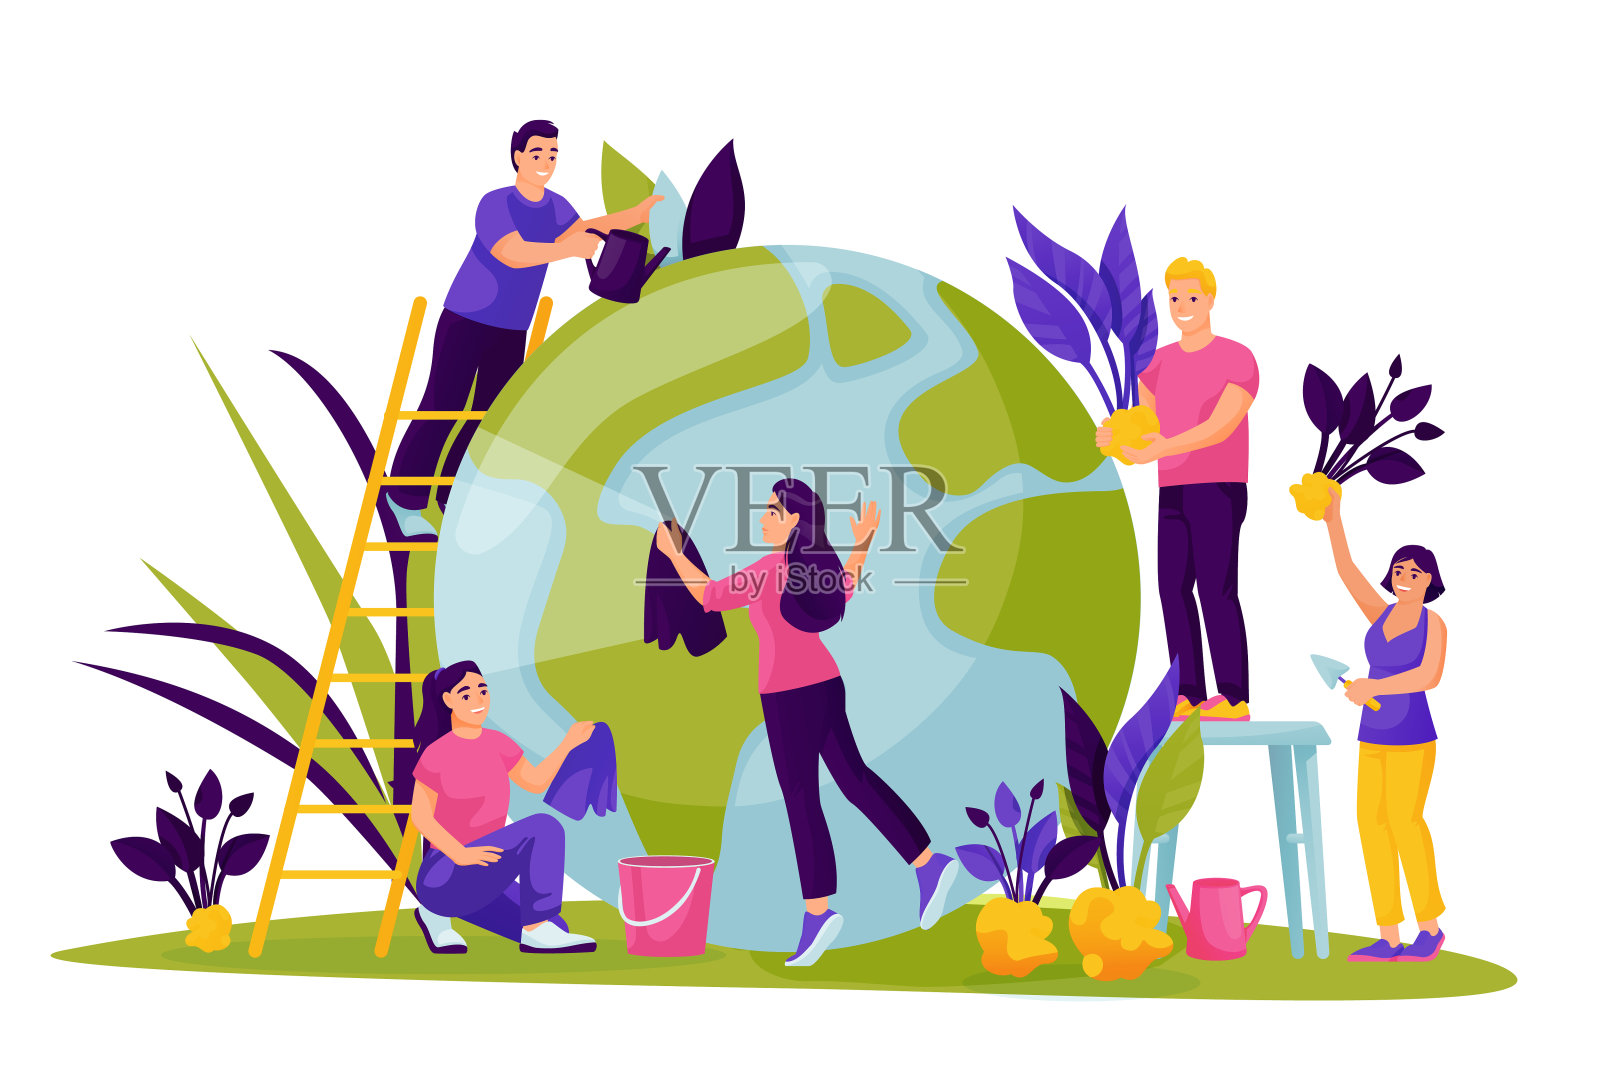 人们照顾地球。拯救地球日的矢量插图。环境、生态、保护自然的理念插画图片素材